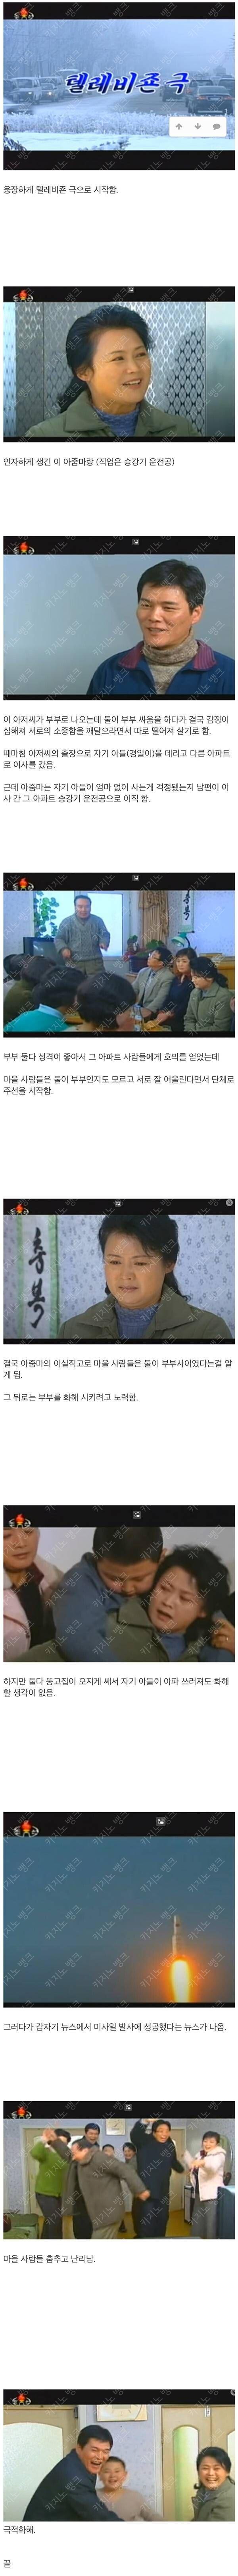 북한드라마